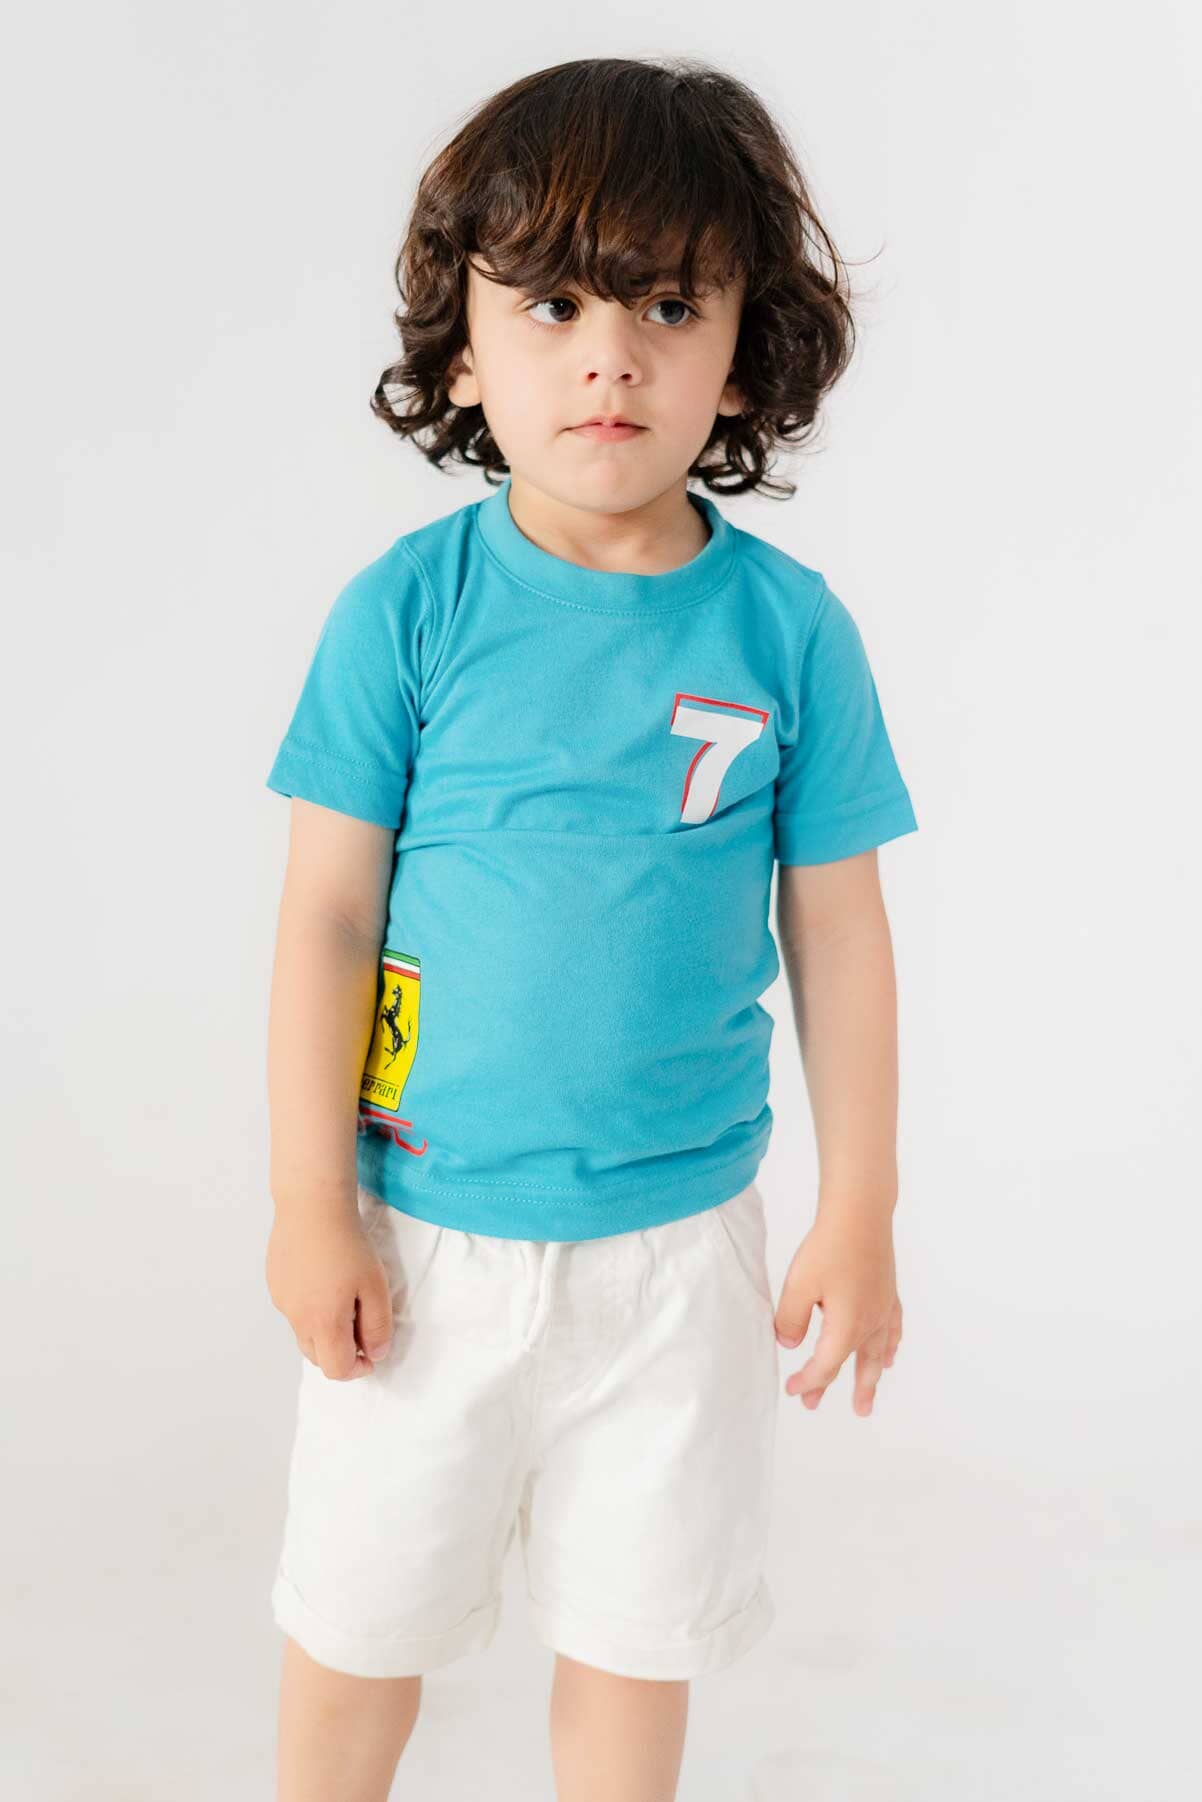 Polo Republica Boy's Ferrari Printed Tee Shirt